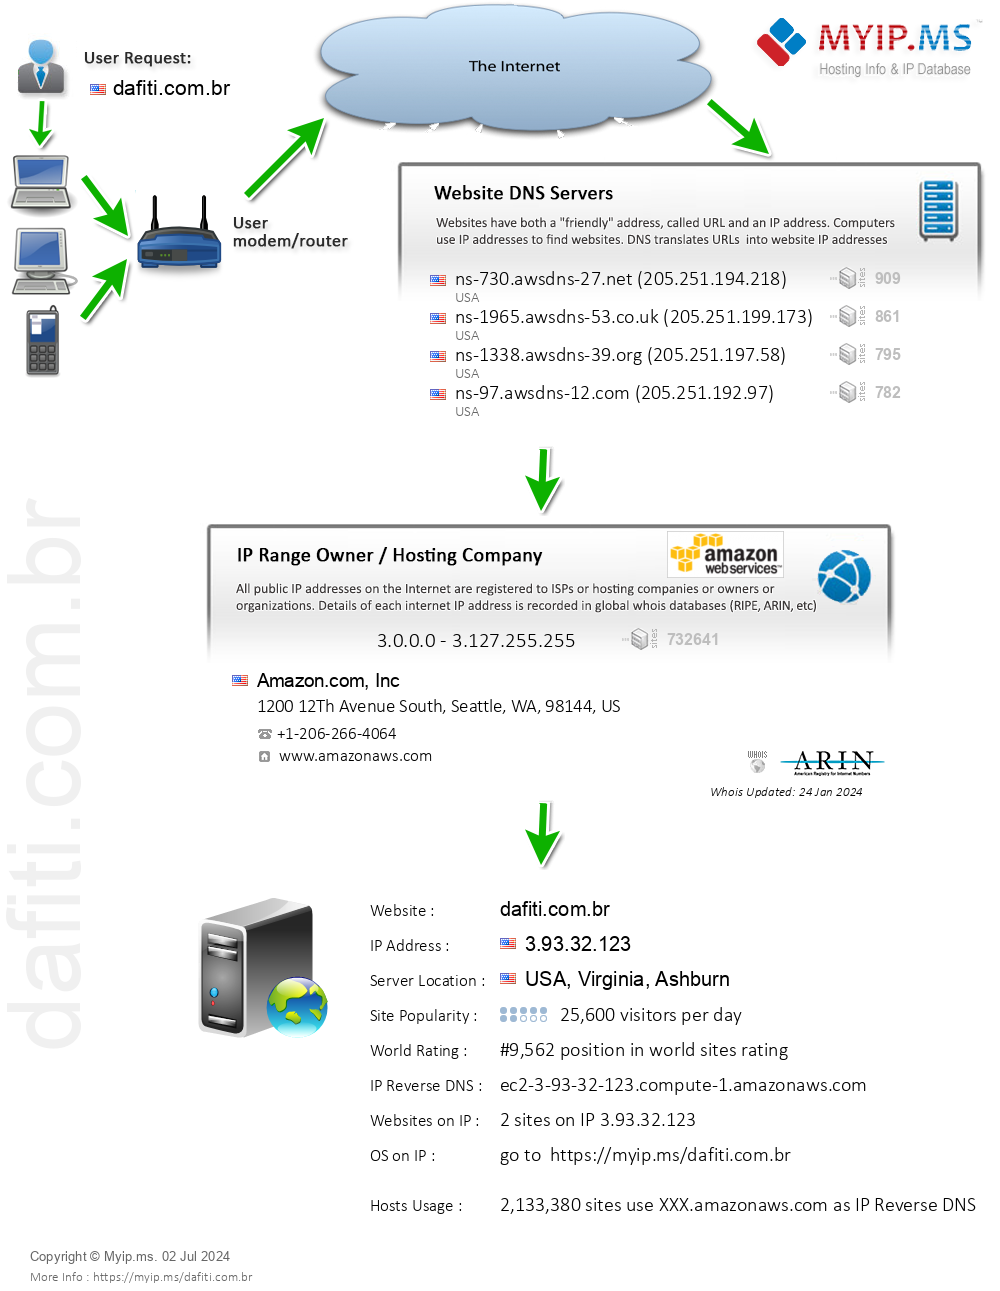 Dafiti.com.br - Website Hosting Visual IP Diagram